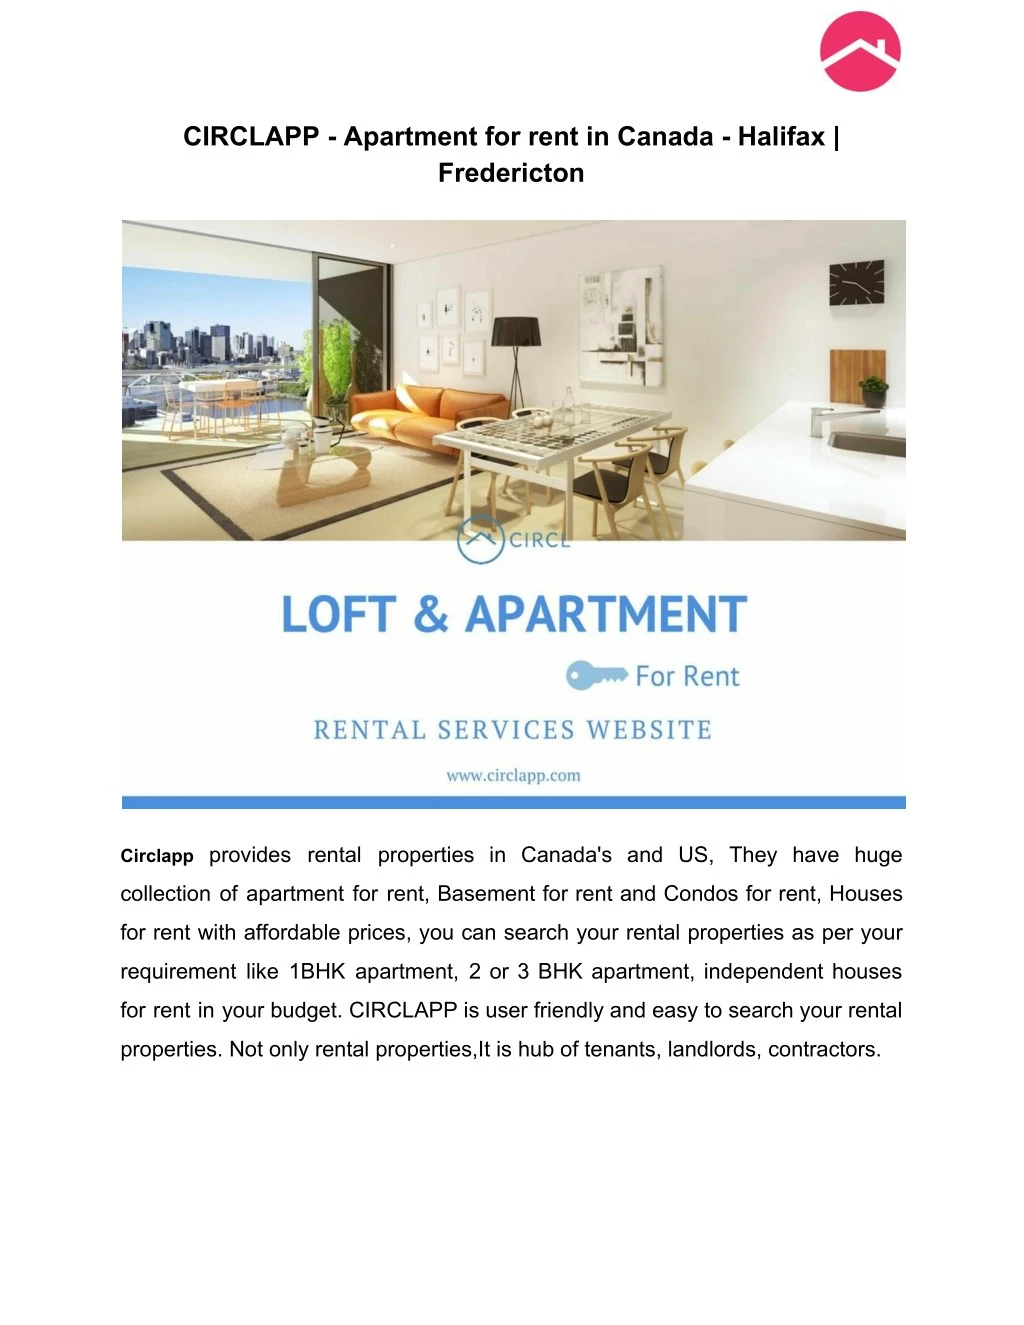 circlapp apartment for rent in canada halifax